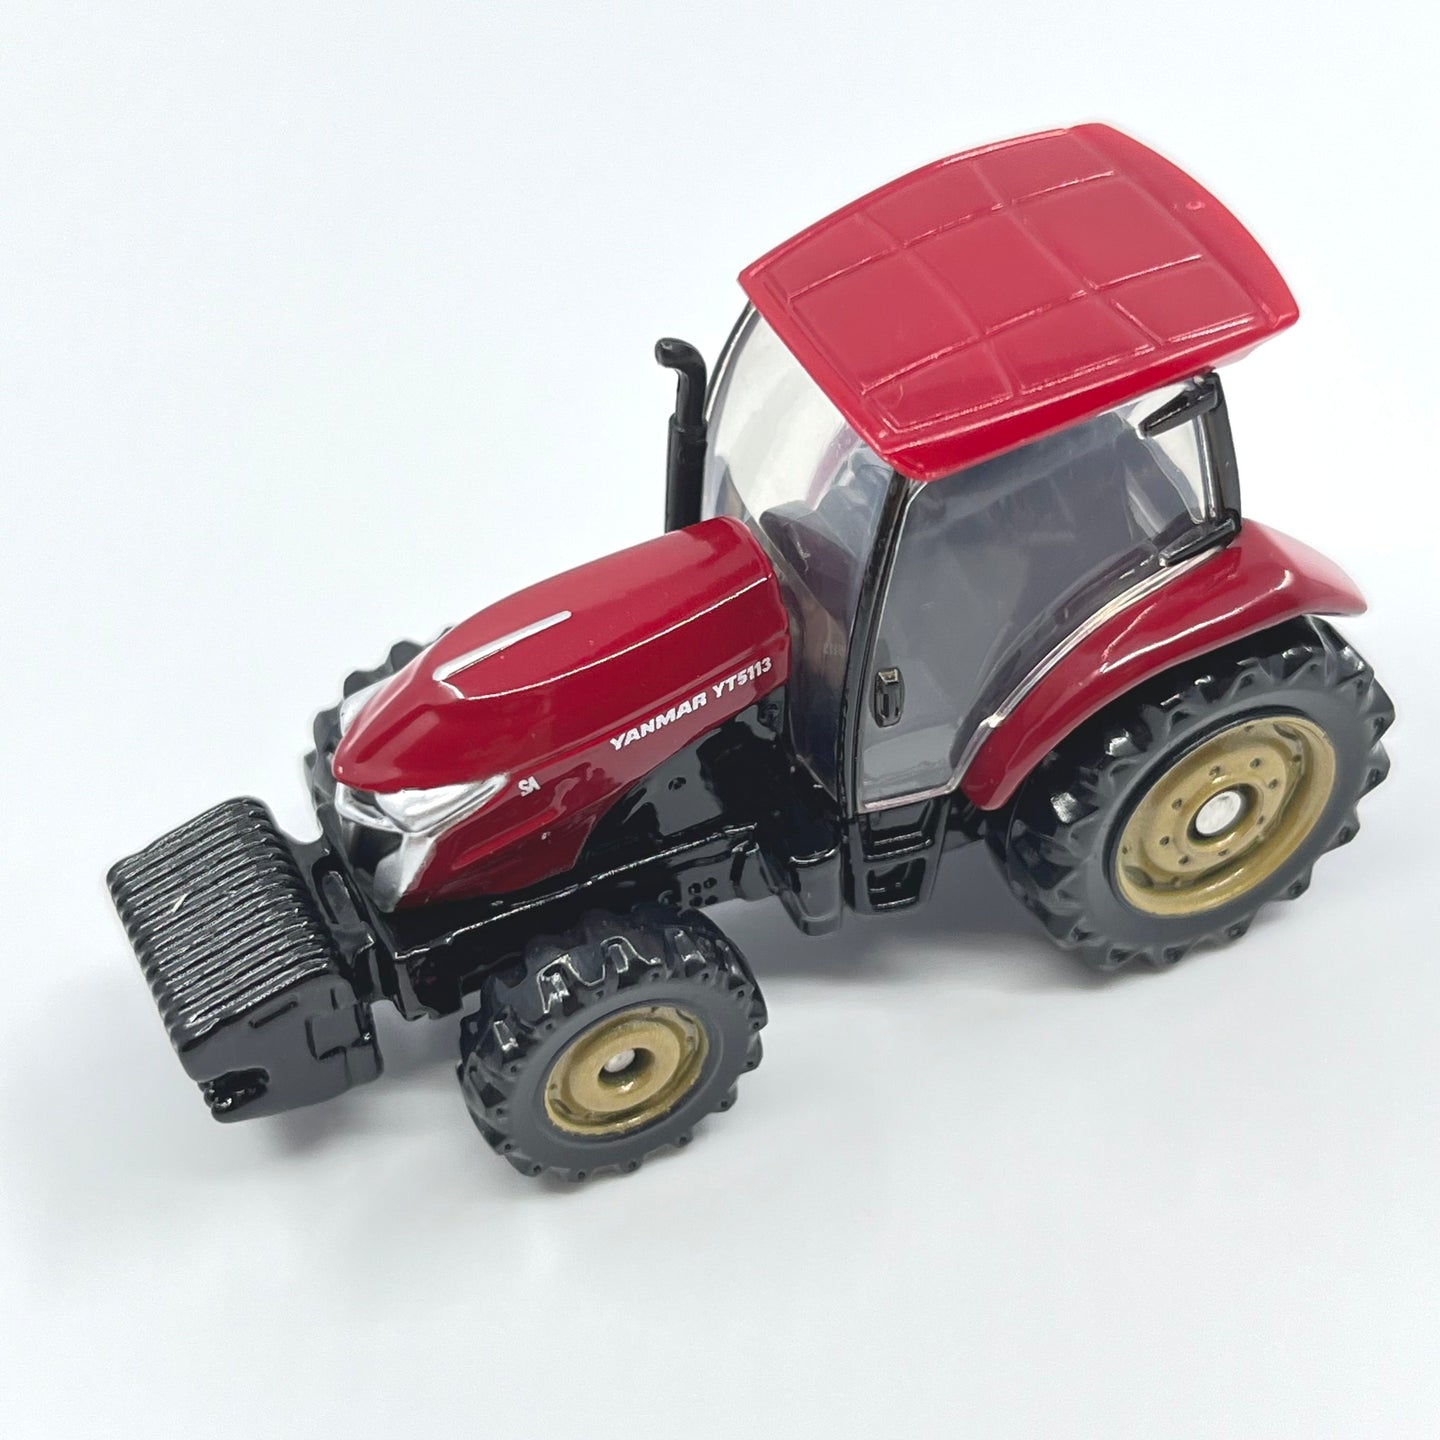 1:76 Yanmar Tractor YT5113 Alloy Diecast Car Model by Takara Tomy